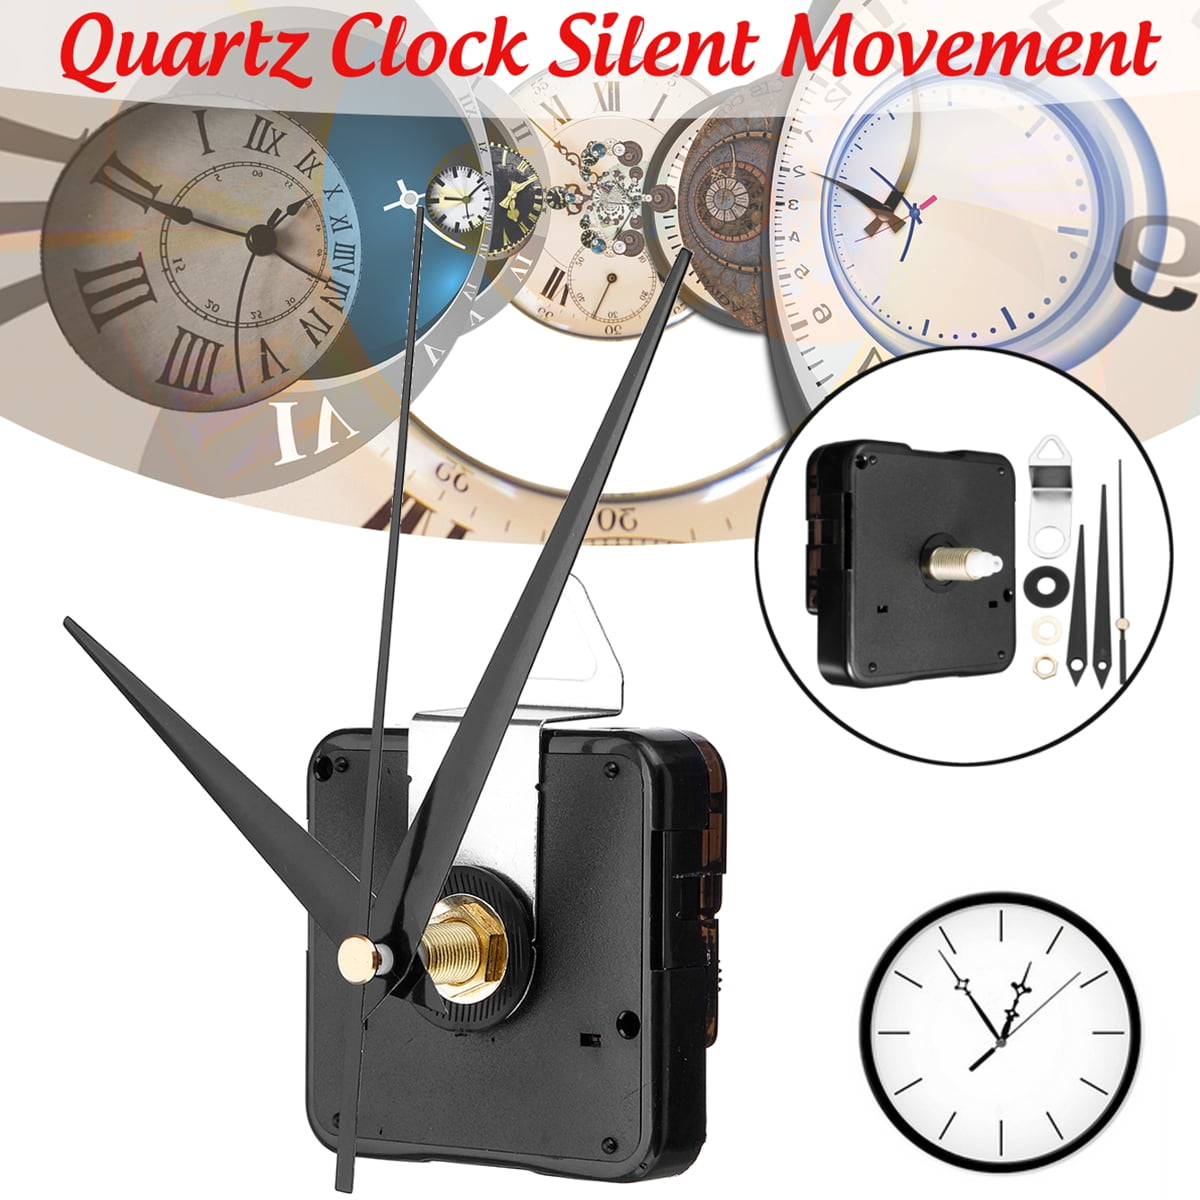 Quiet Wall Clock Quartz Movement Mechanism DIY 5168s/6168s/668 Gold Hands 33 